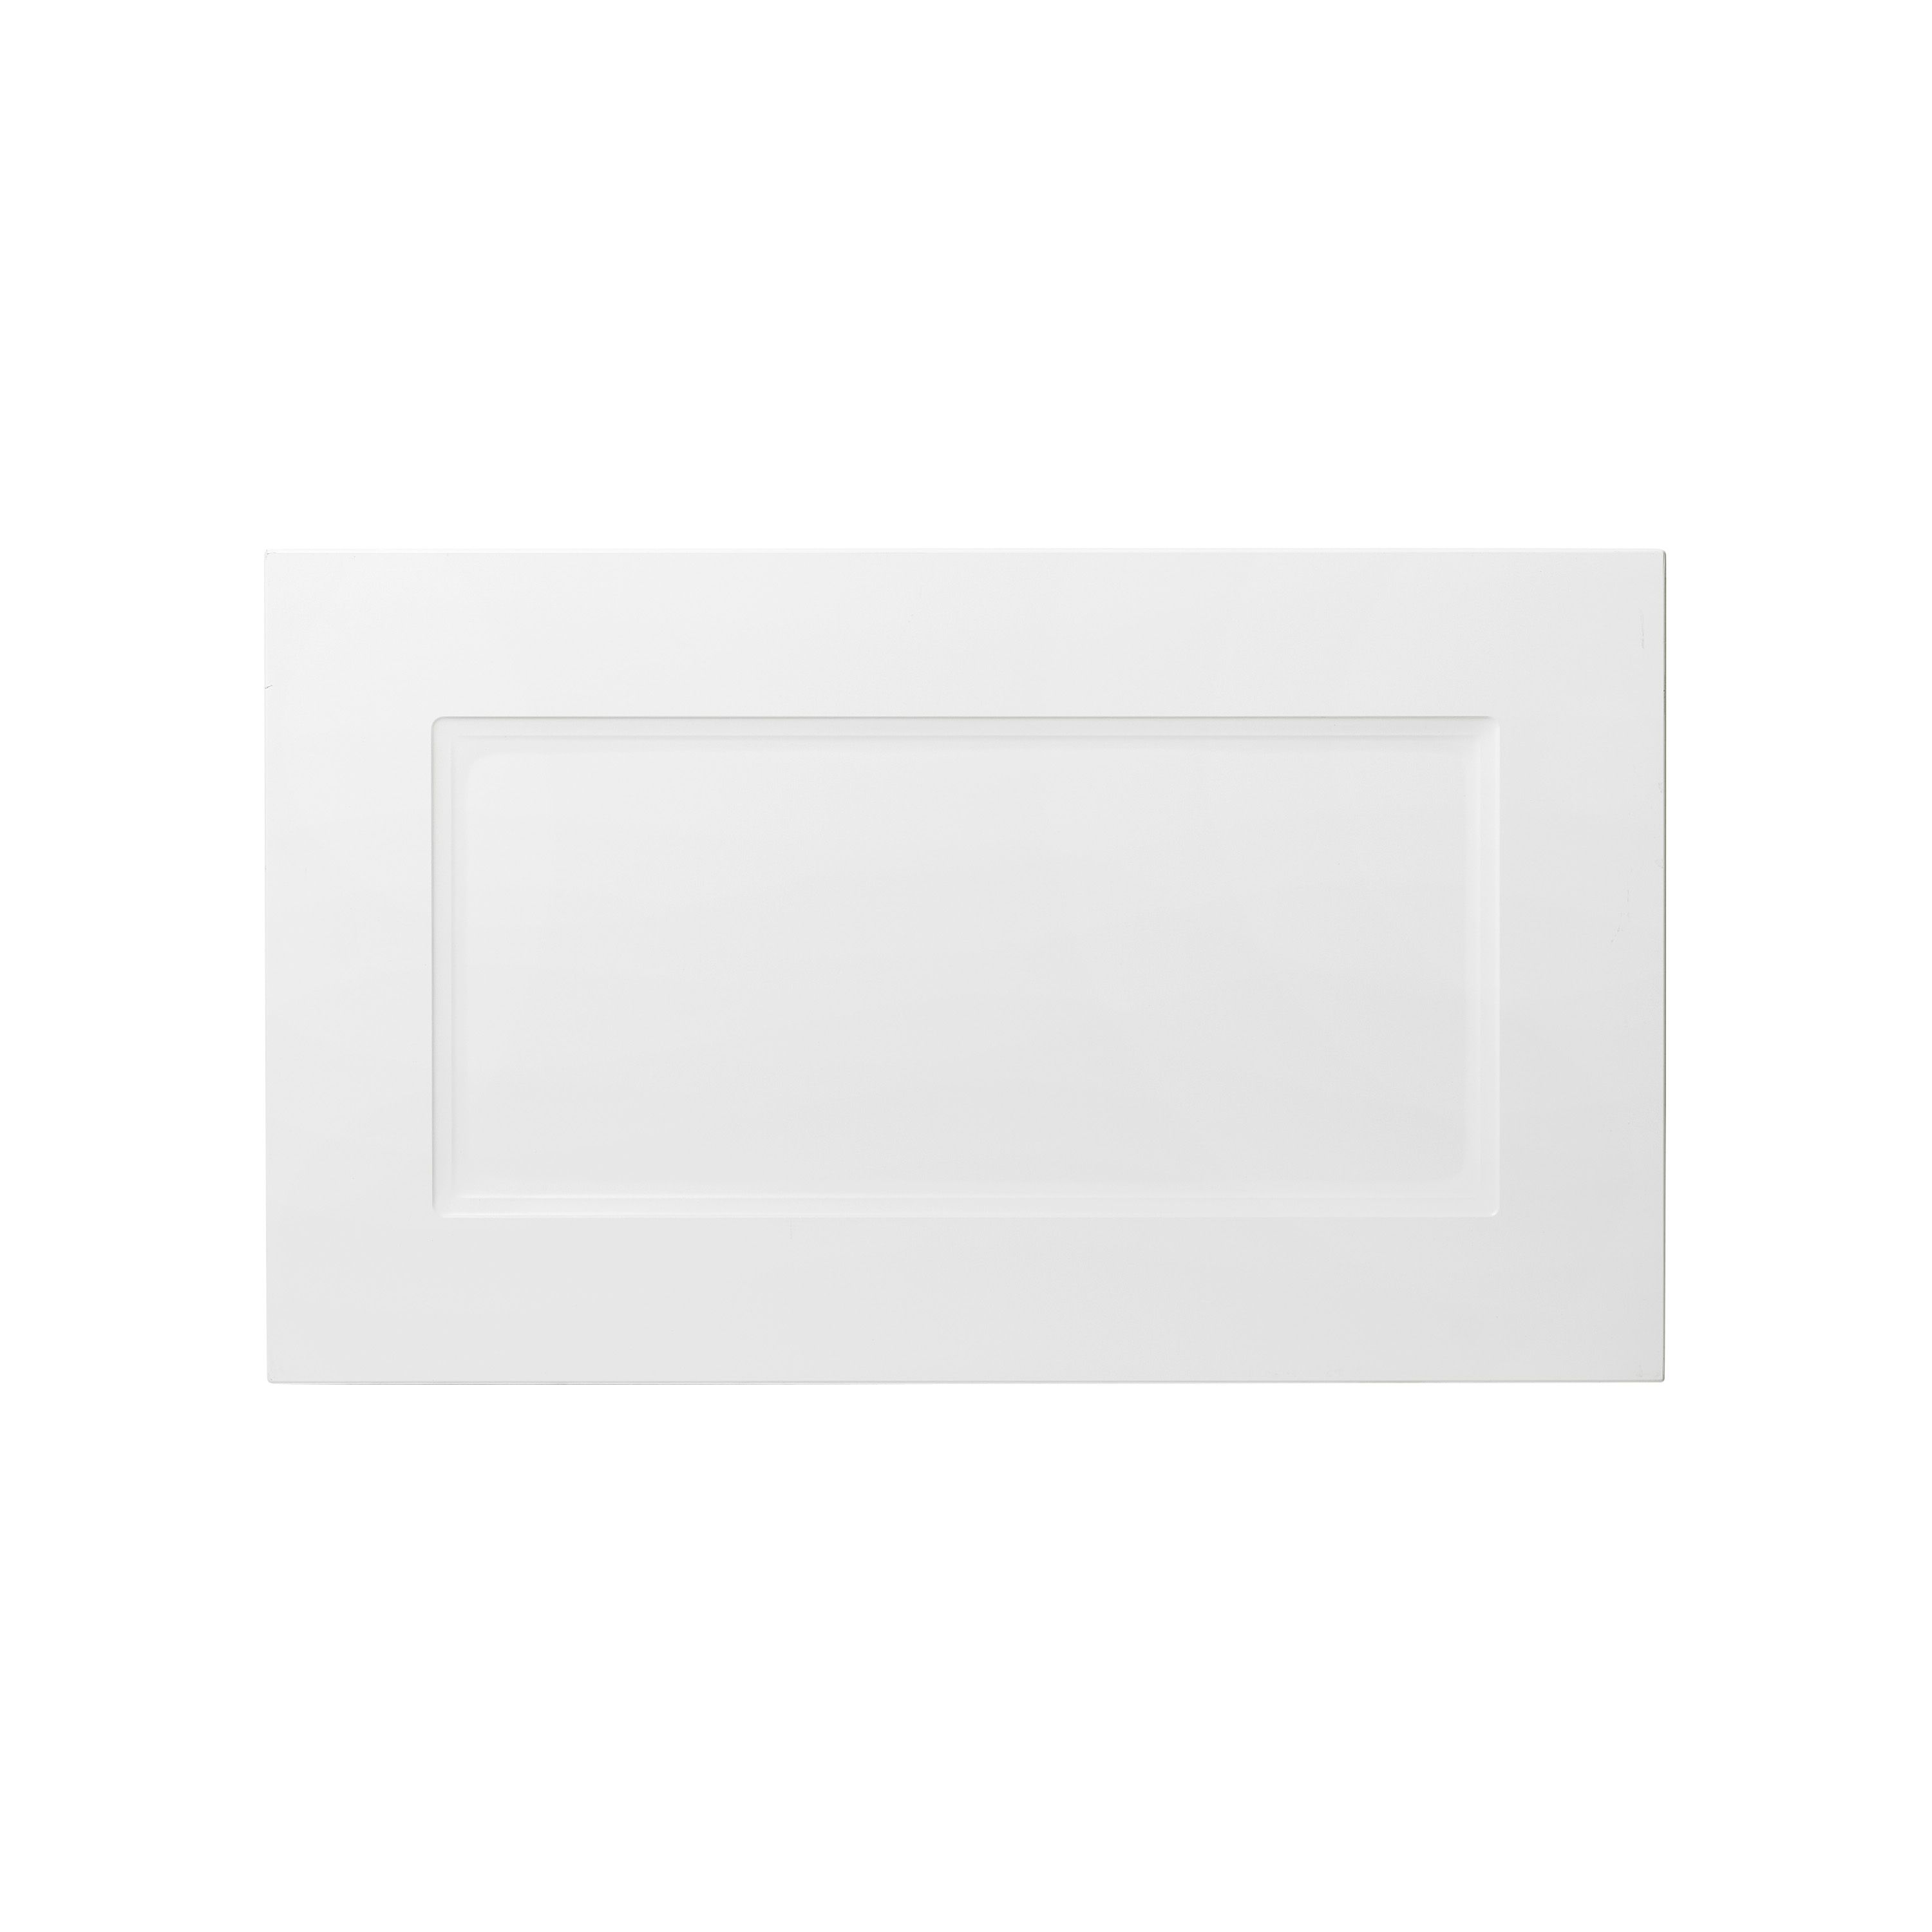 GoodHome Artemisia Matt white classic shaker Drawer front, bridging door & bi fold door, (W)600mm (H)356mm (T)18mm